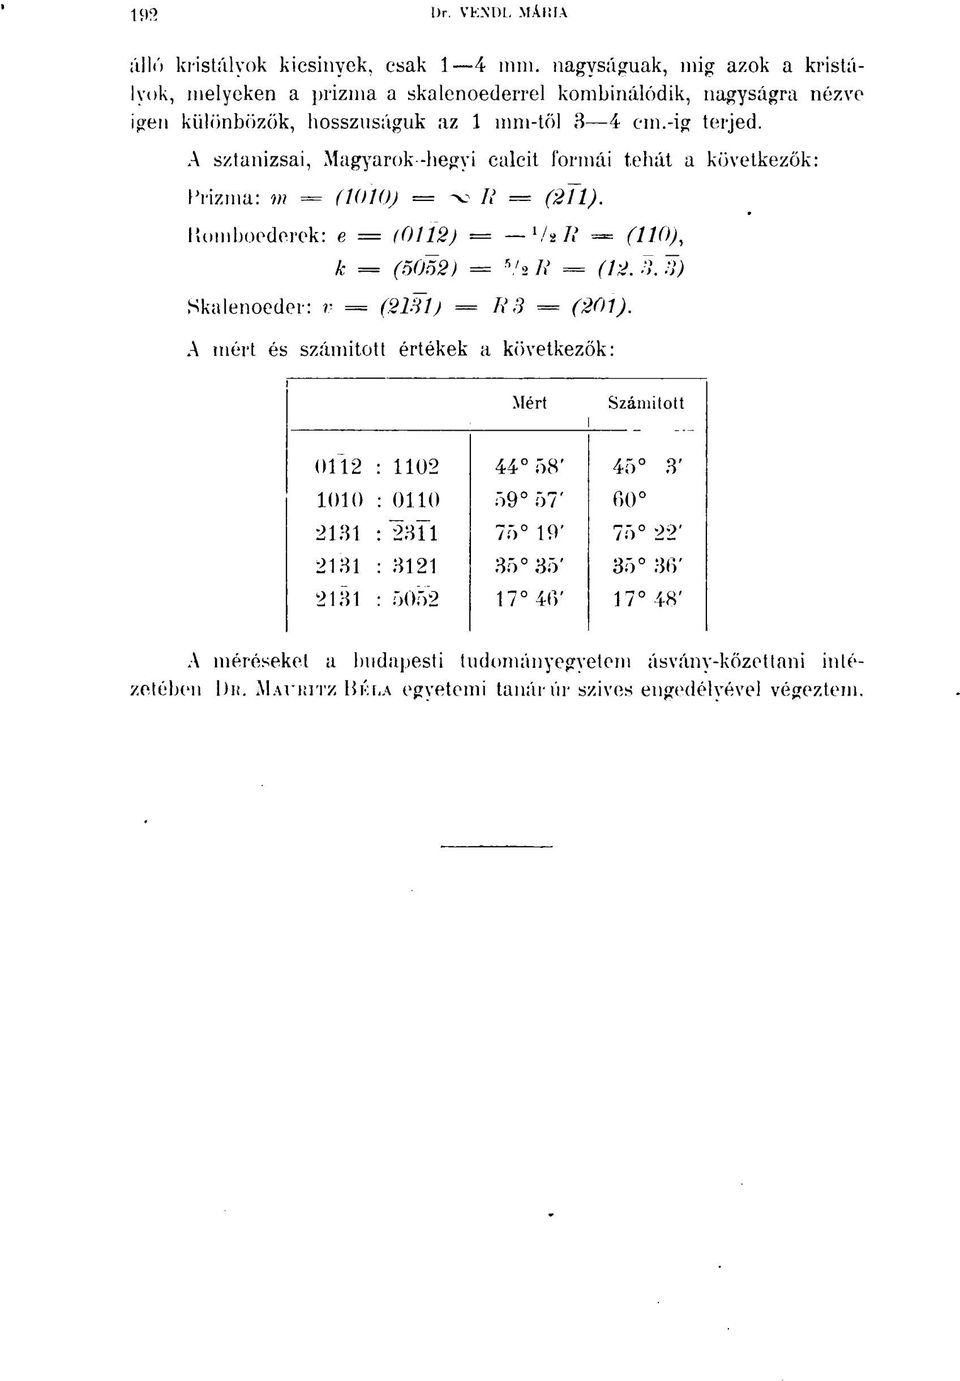 A sztanizsai, Magyarok-hegyi calcit formái tehát a következők: Prizma: m = (1010) = oo 7? = (211). Romboederek: e = (0112) = '/s R = (110), k = (5052) = 5 /a R = (12.